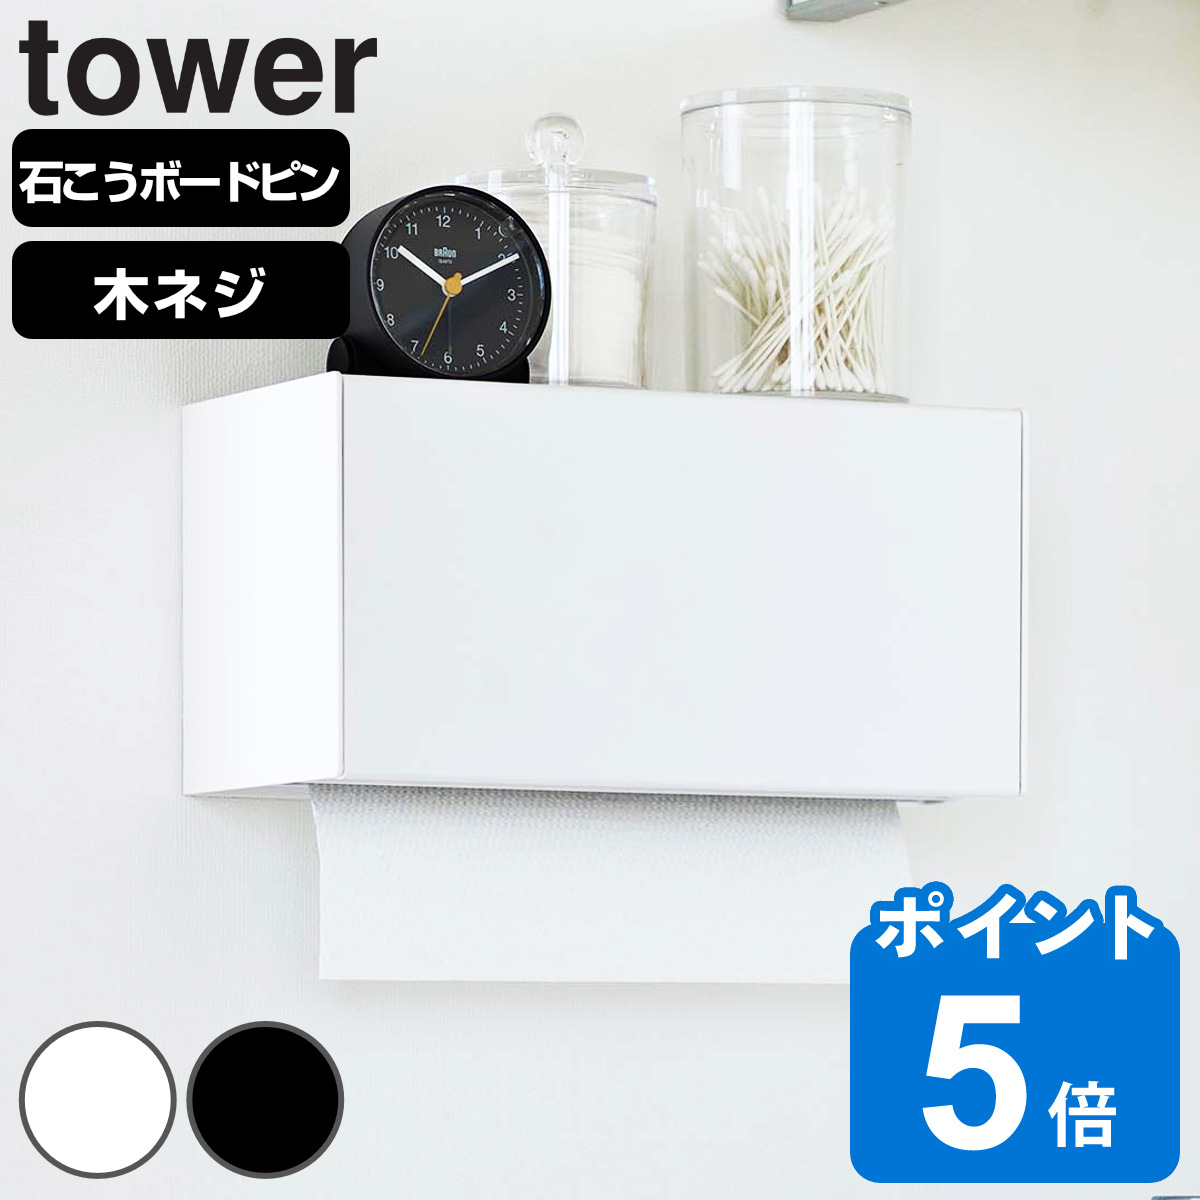 山崎実業 tower 石こうボード壁対応トレー付きペーパータオルディスペンサー タワー